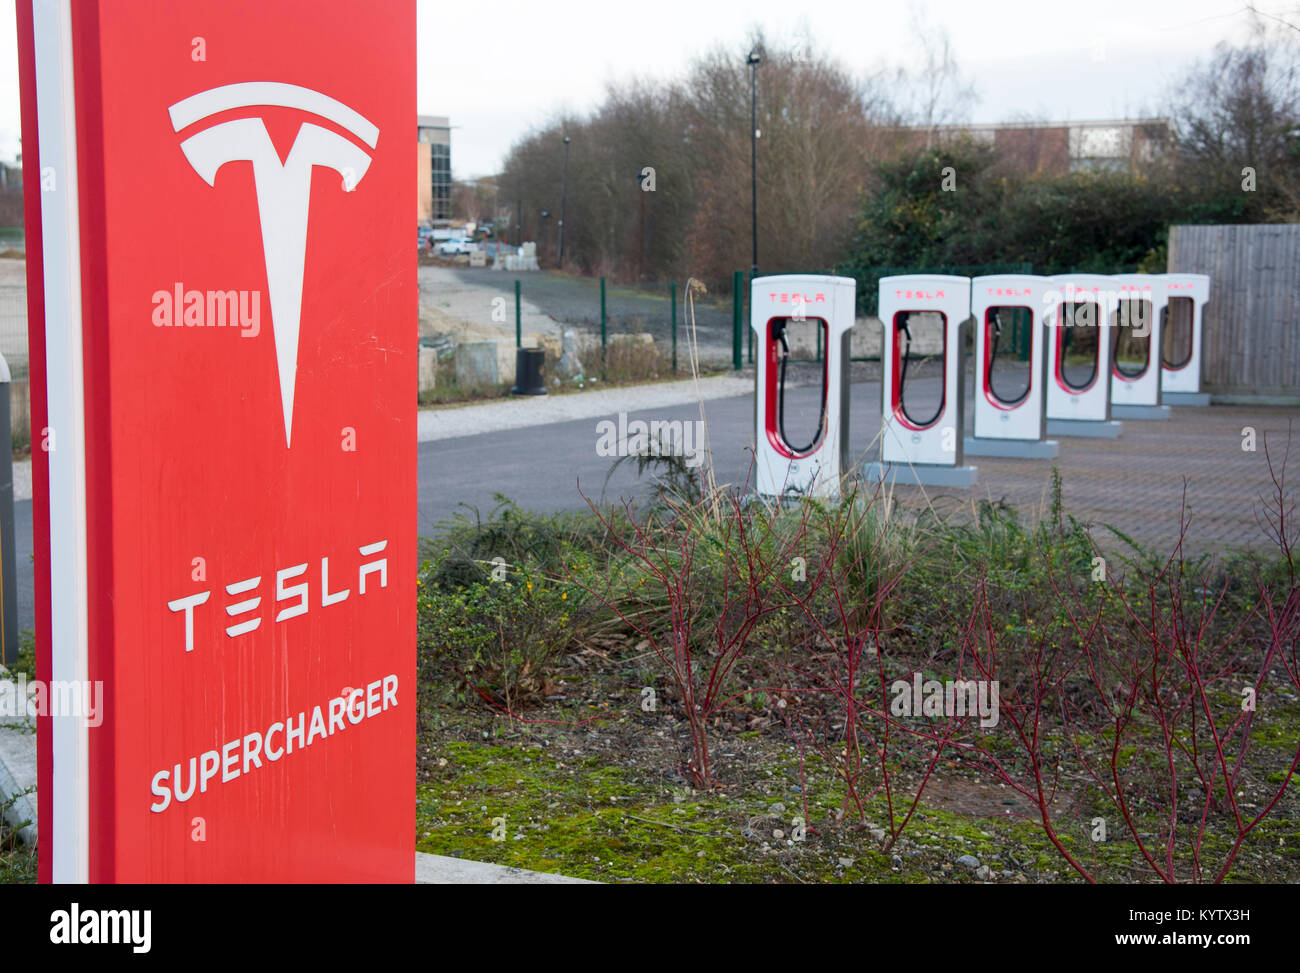 La imagen muestra un punto Supercharger Tesla para vehículos eléctricos en un aparcamiento de coches en Maidstone Kent Foto de stock